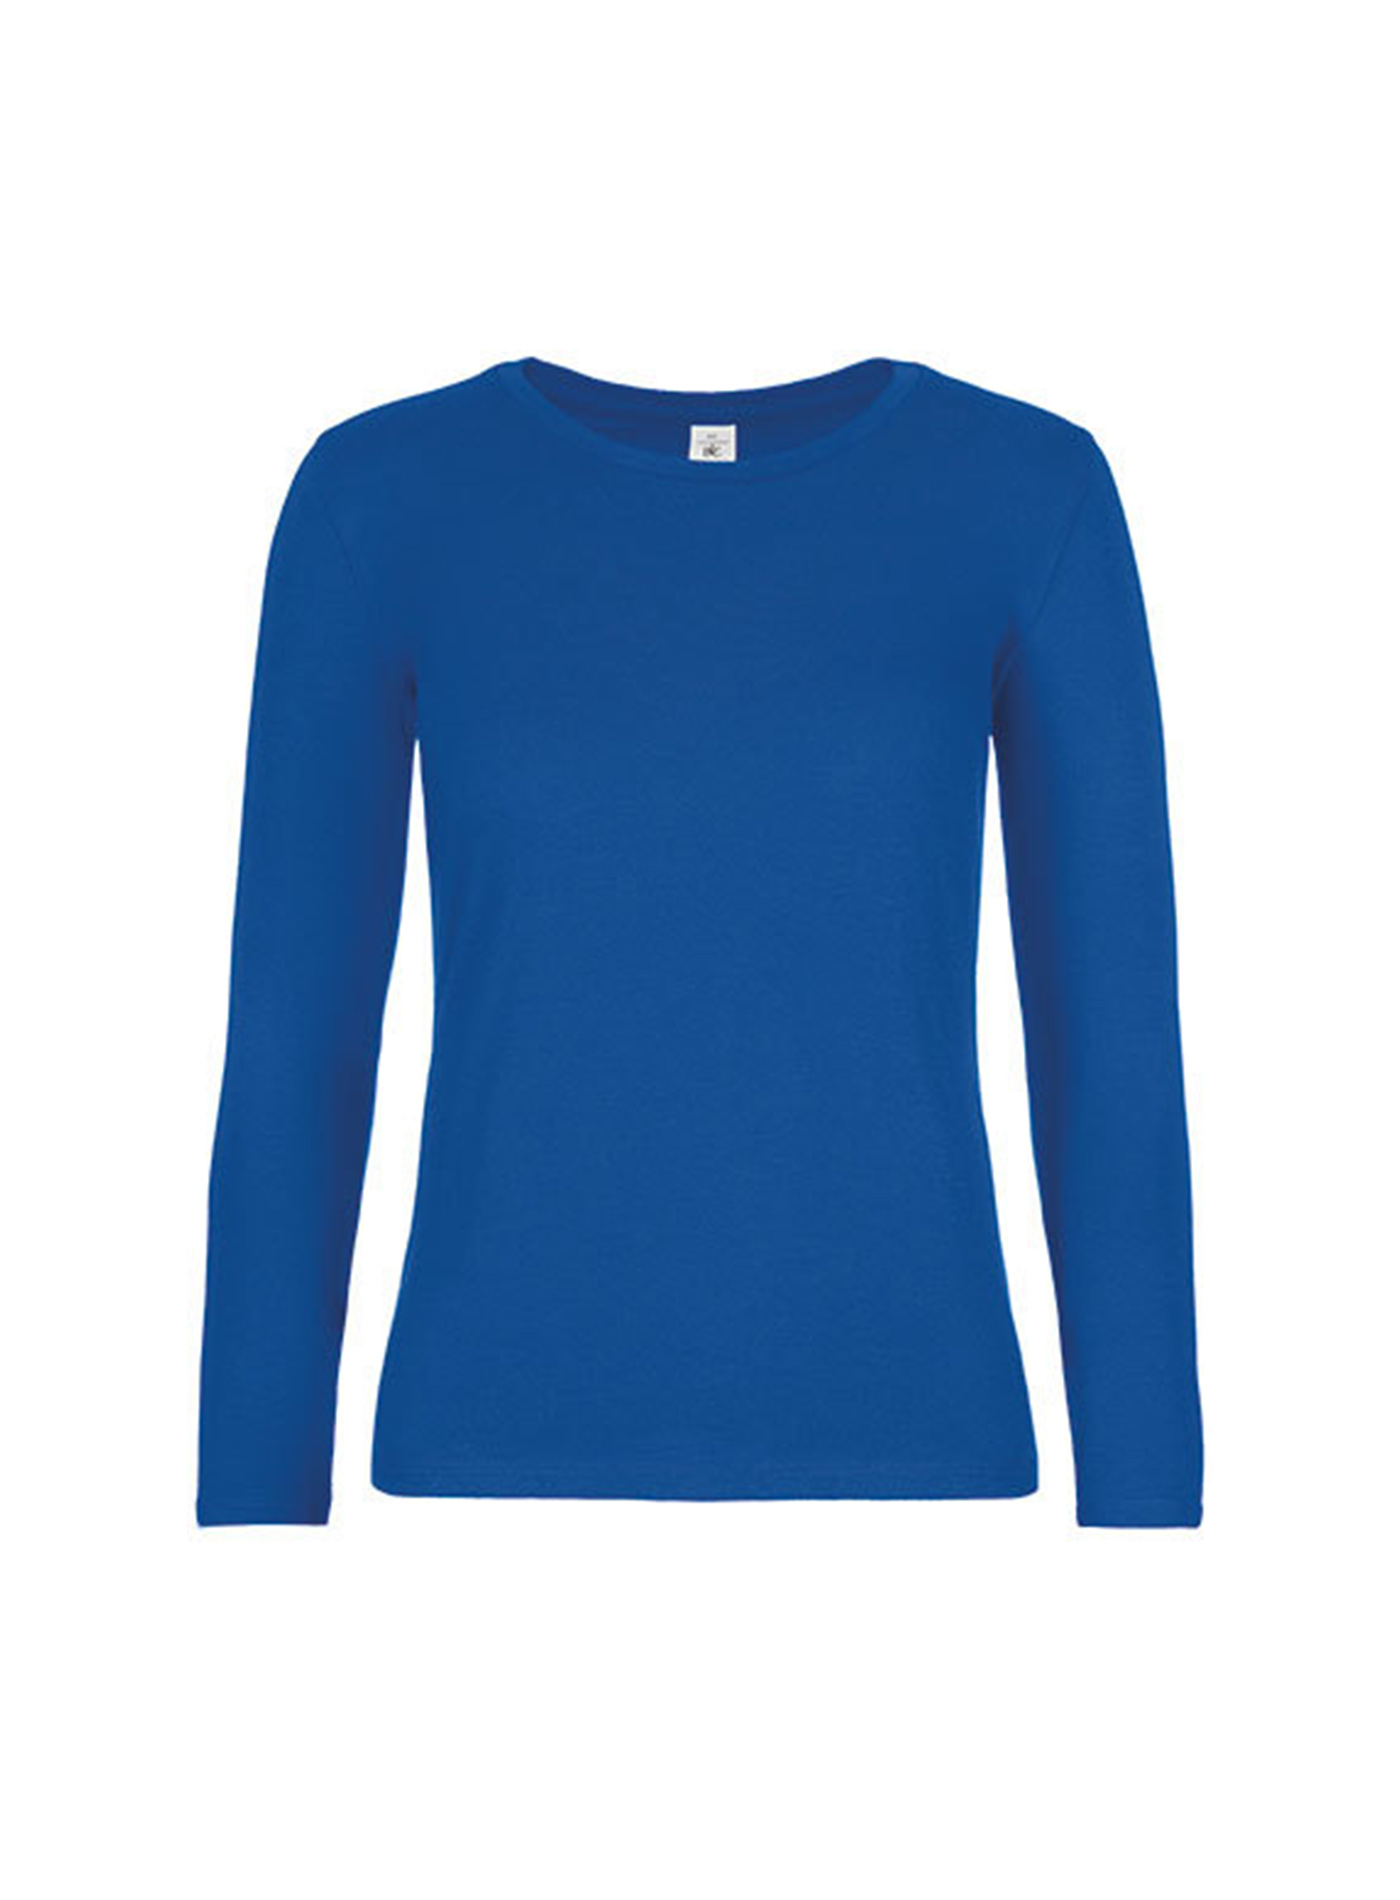 Dámské tričko s dlouhým rukávem B&C Collection - Královská modrá L